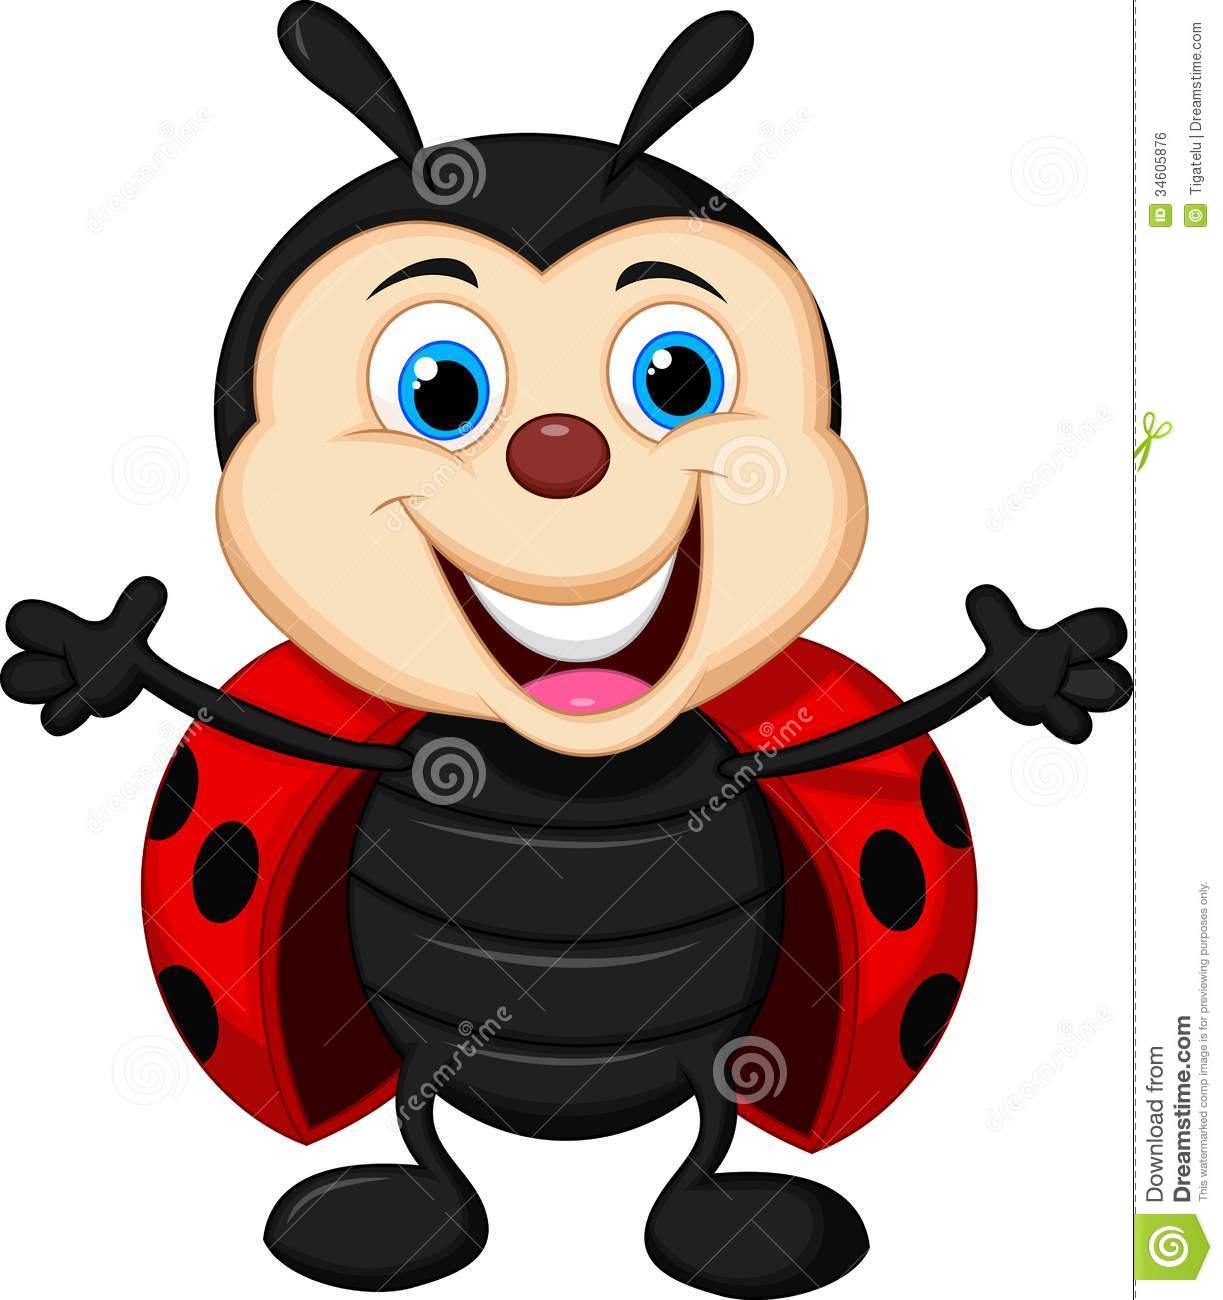 Royalty Free Stock Image  Happy Ladybug Cartoon